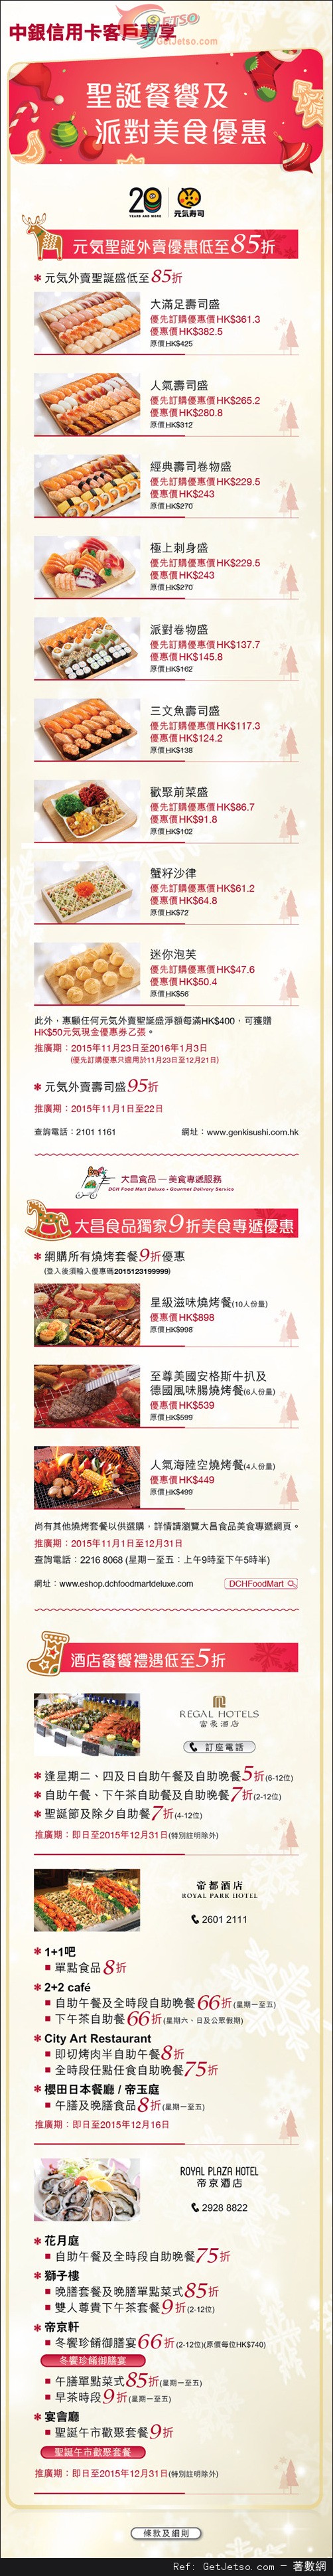 中銀信用卡享聖誕餐饗及派對美食低至半價優惠(至15年12月31日)圖片1